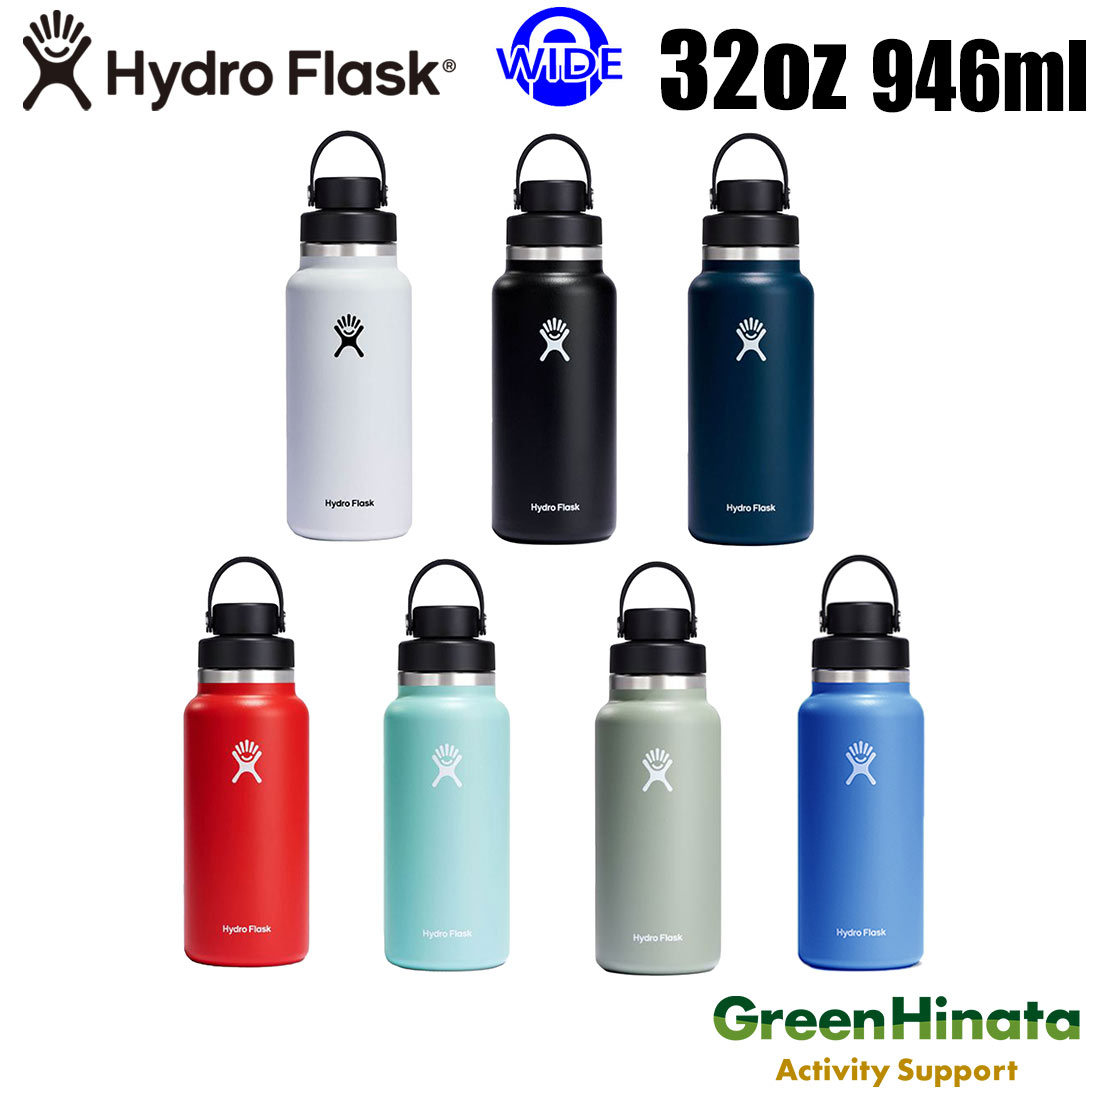  ハイドロフラスク ワイドマウス32oz チャグキャップ 保温 保冷 ボトル 水筒 HydroFlask HYDRATION 32oz WIDE MOUTH FLEX CHUG CAP